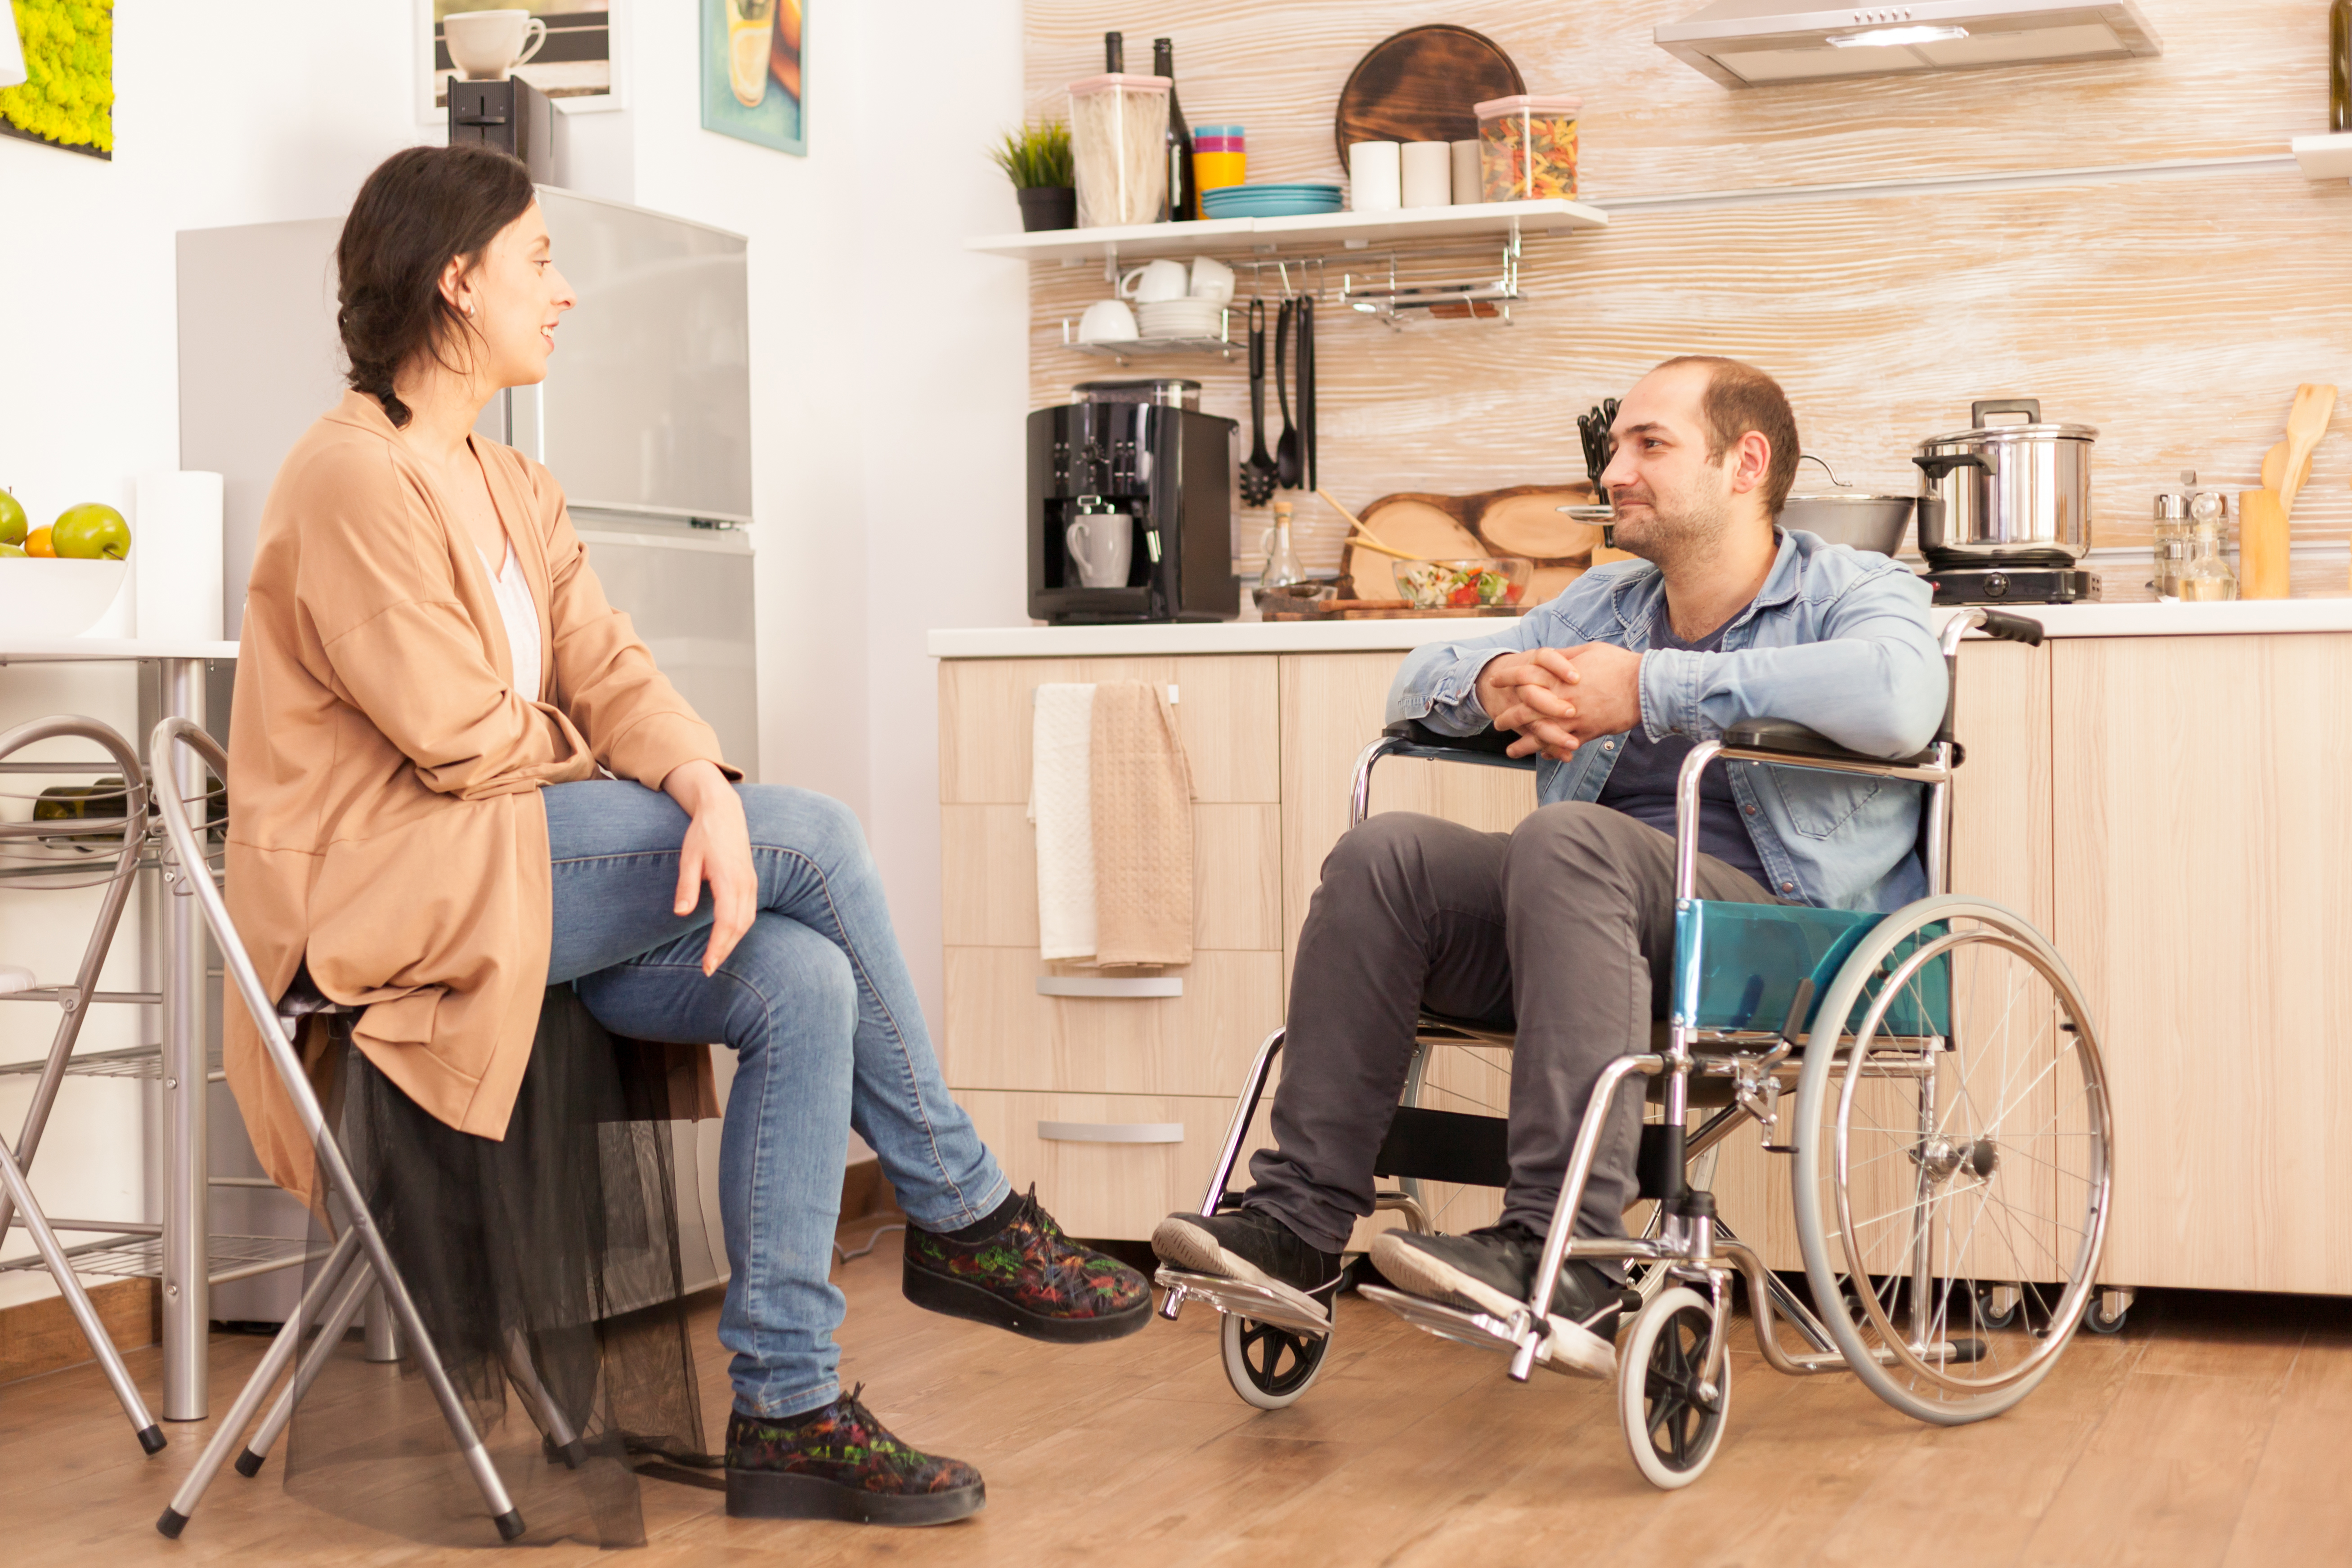 Муж инвалид. Кухня для инвалидов. Кухня для инвалида с креслом. Муж инвалид и его жена. Супруга инвалида 1 группы